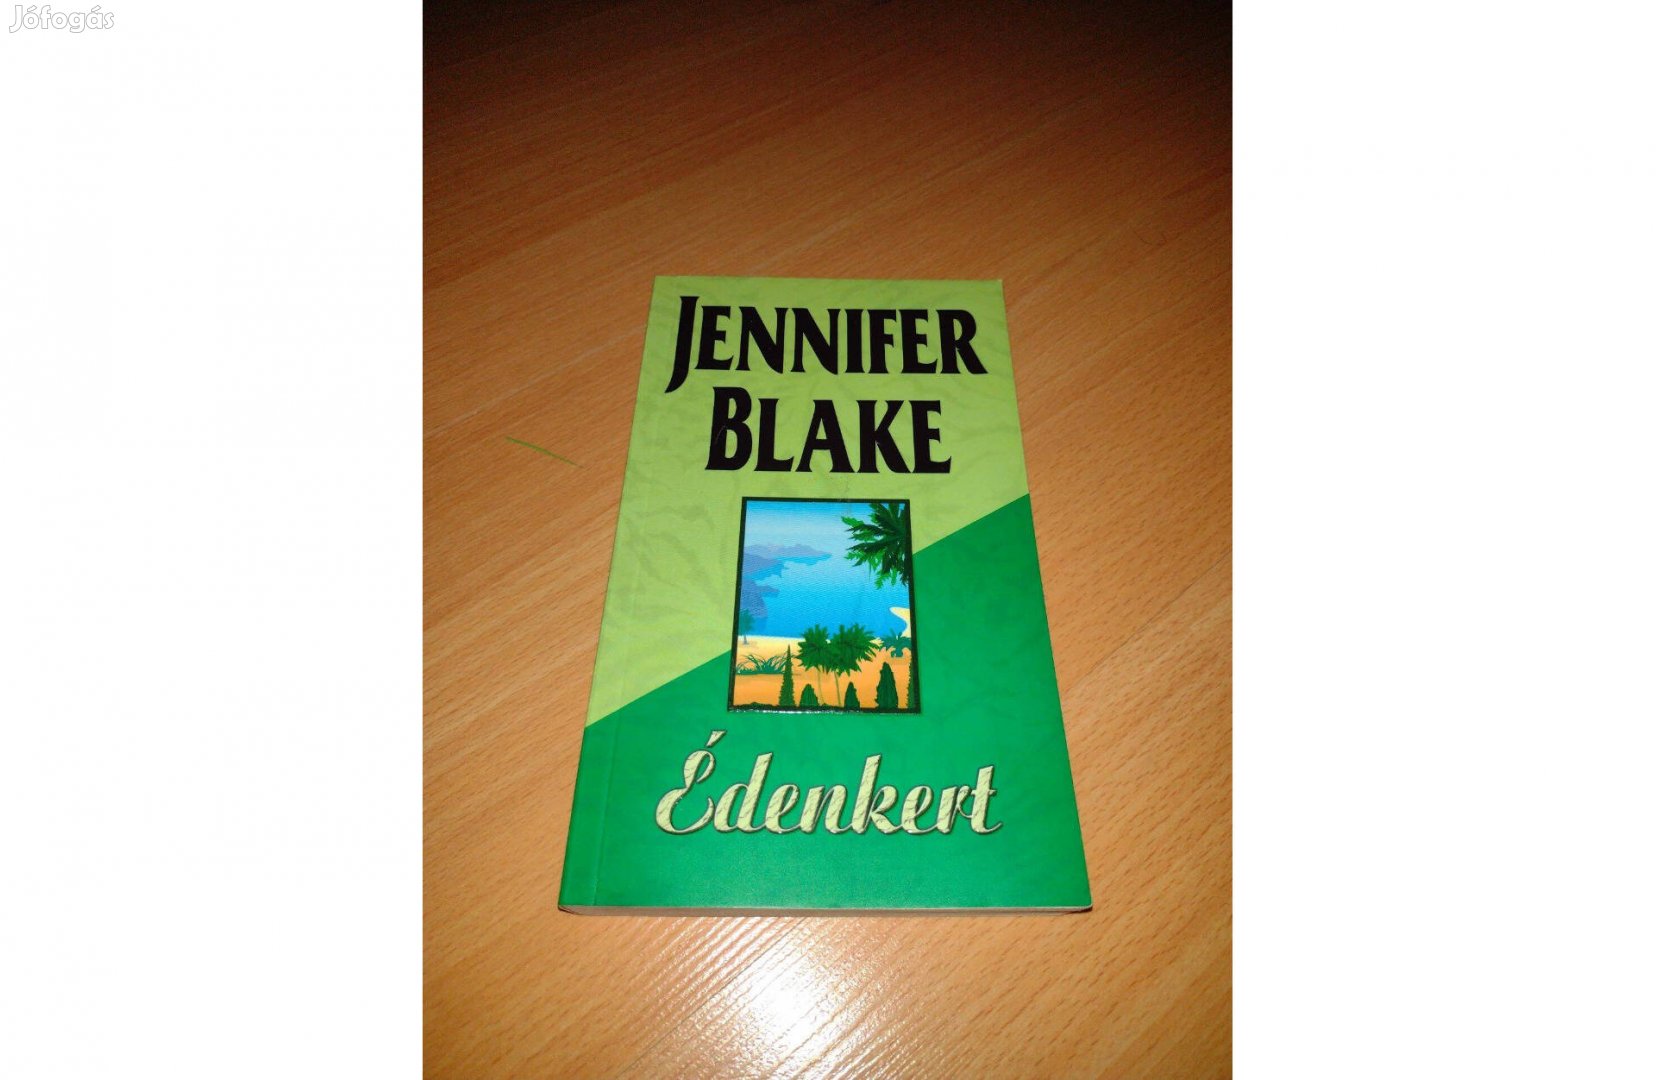 Jennifer Blake Édenkert könyv